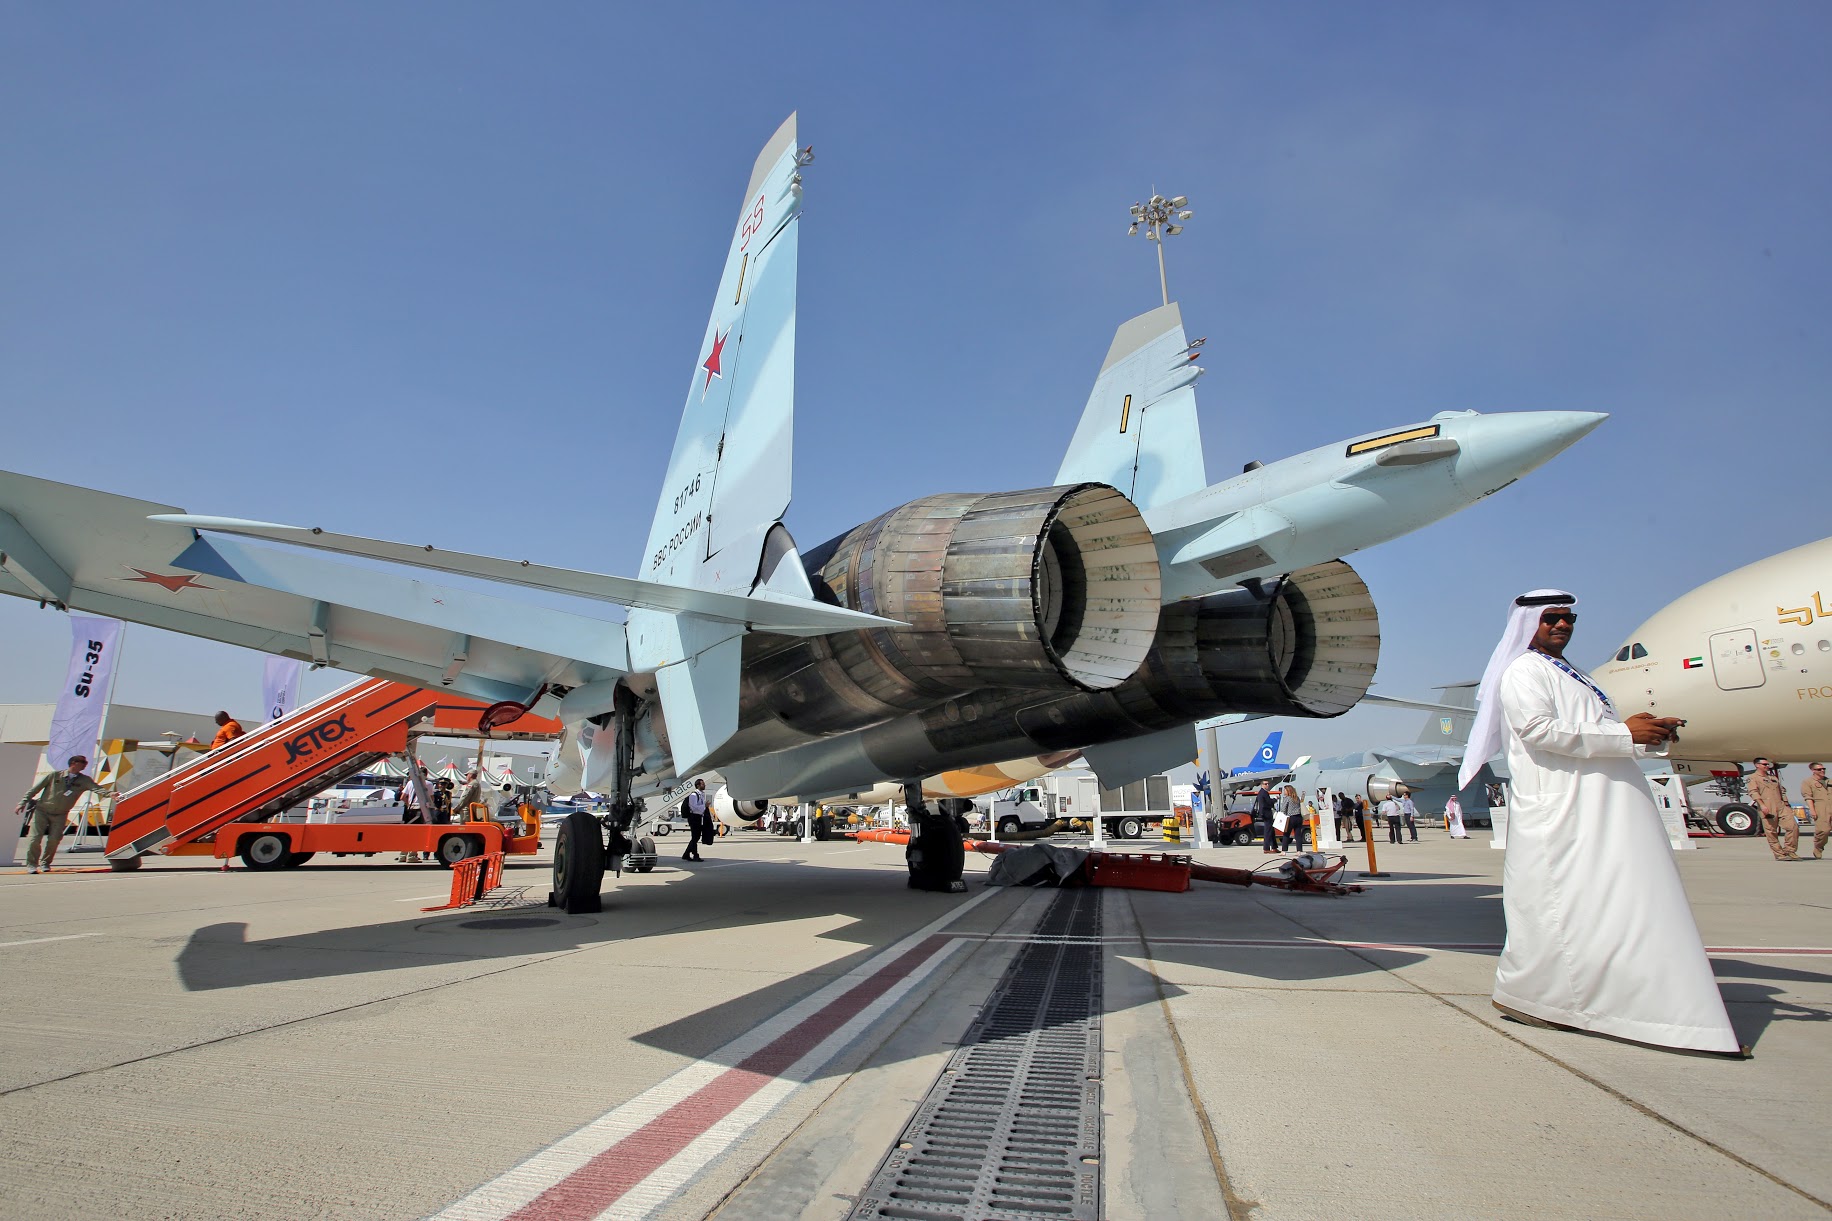 Russia Presents Advanced Air Force and Air Defense Equipment at Dubai Airshow 2019 